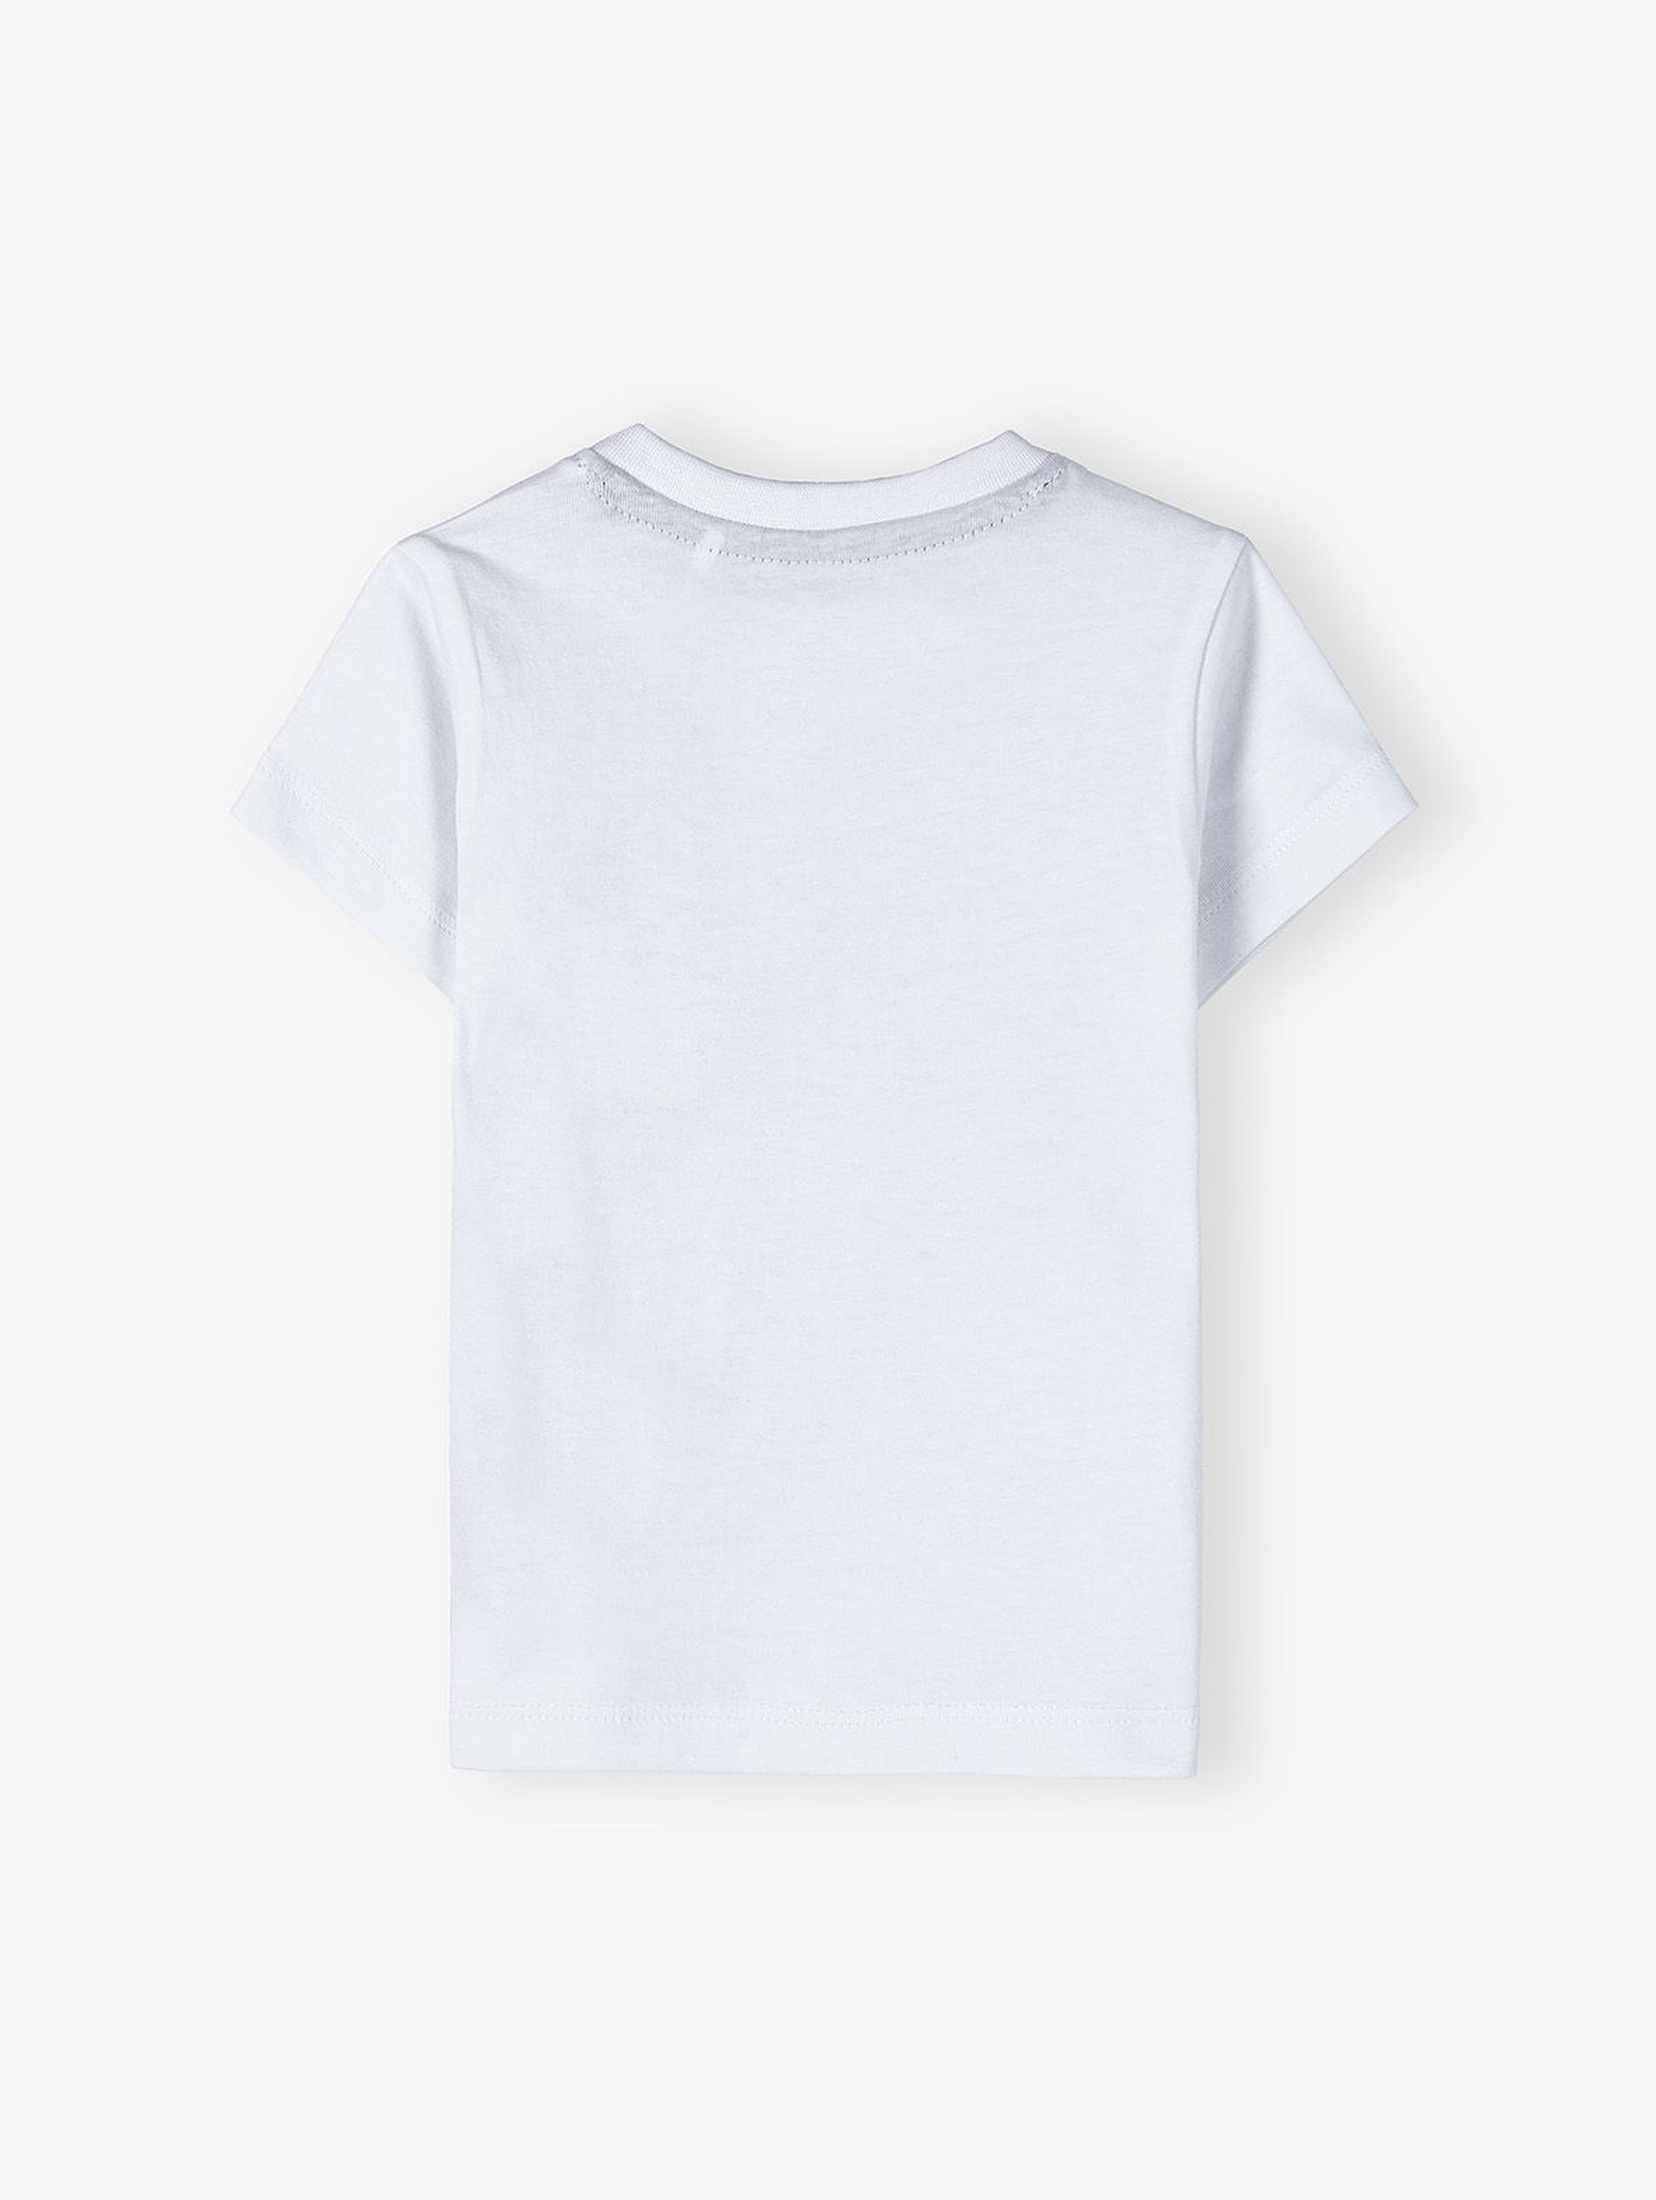 Bawełniany biały T-shirt dla chłopca